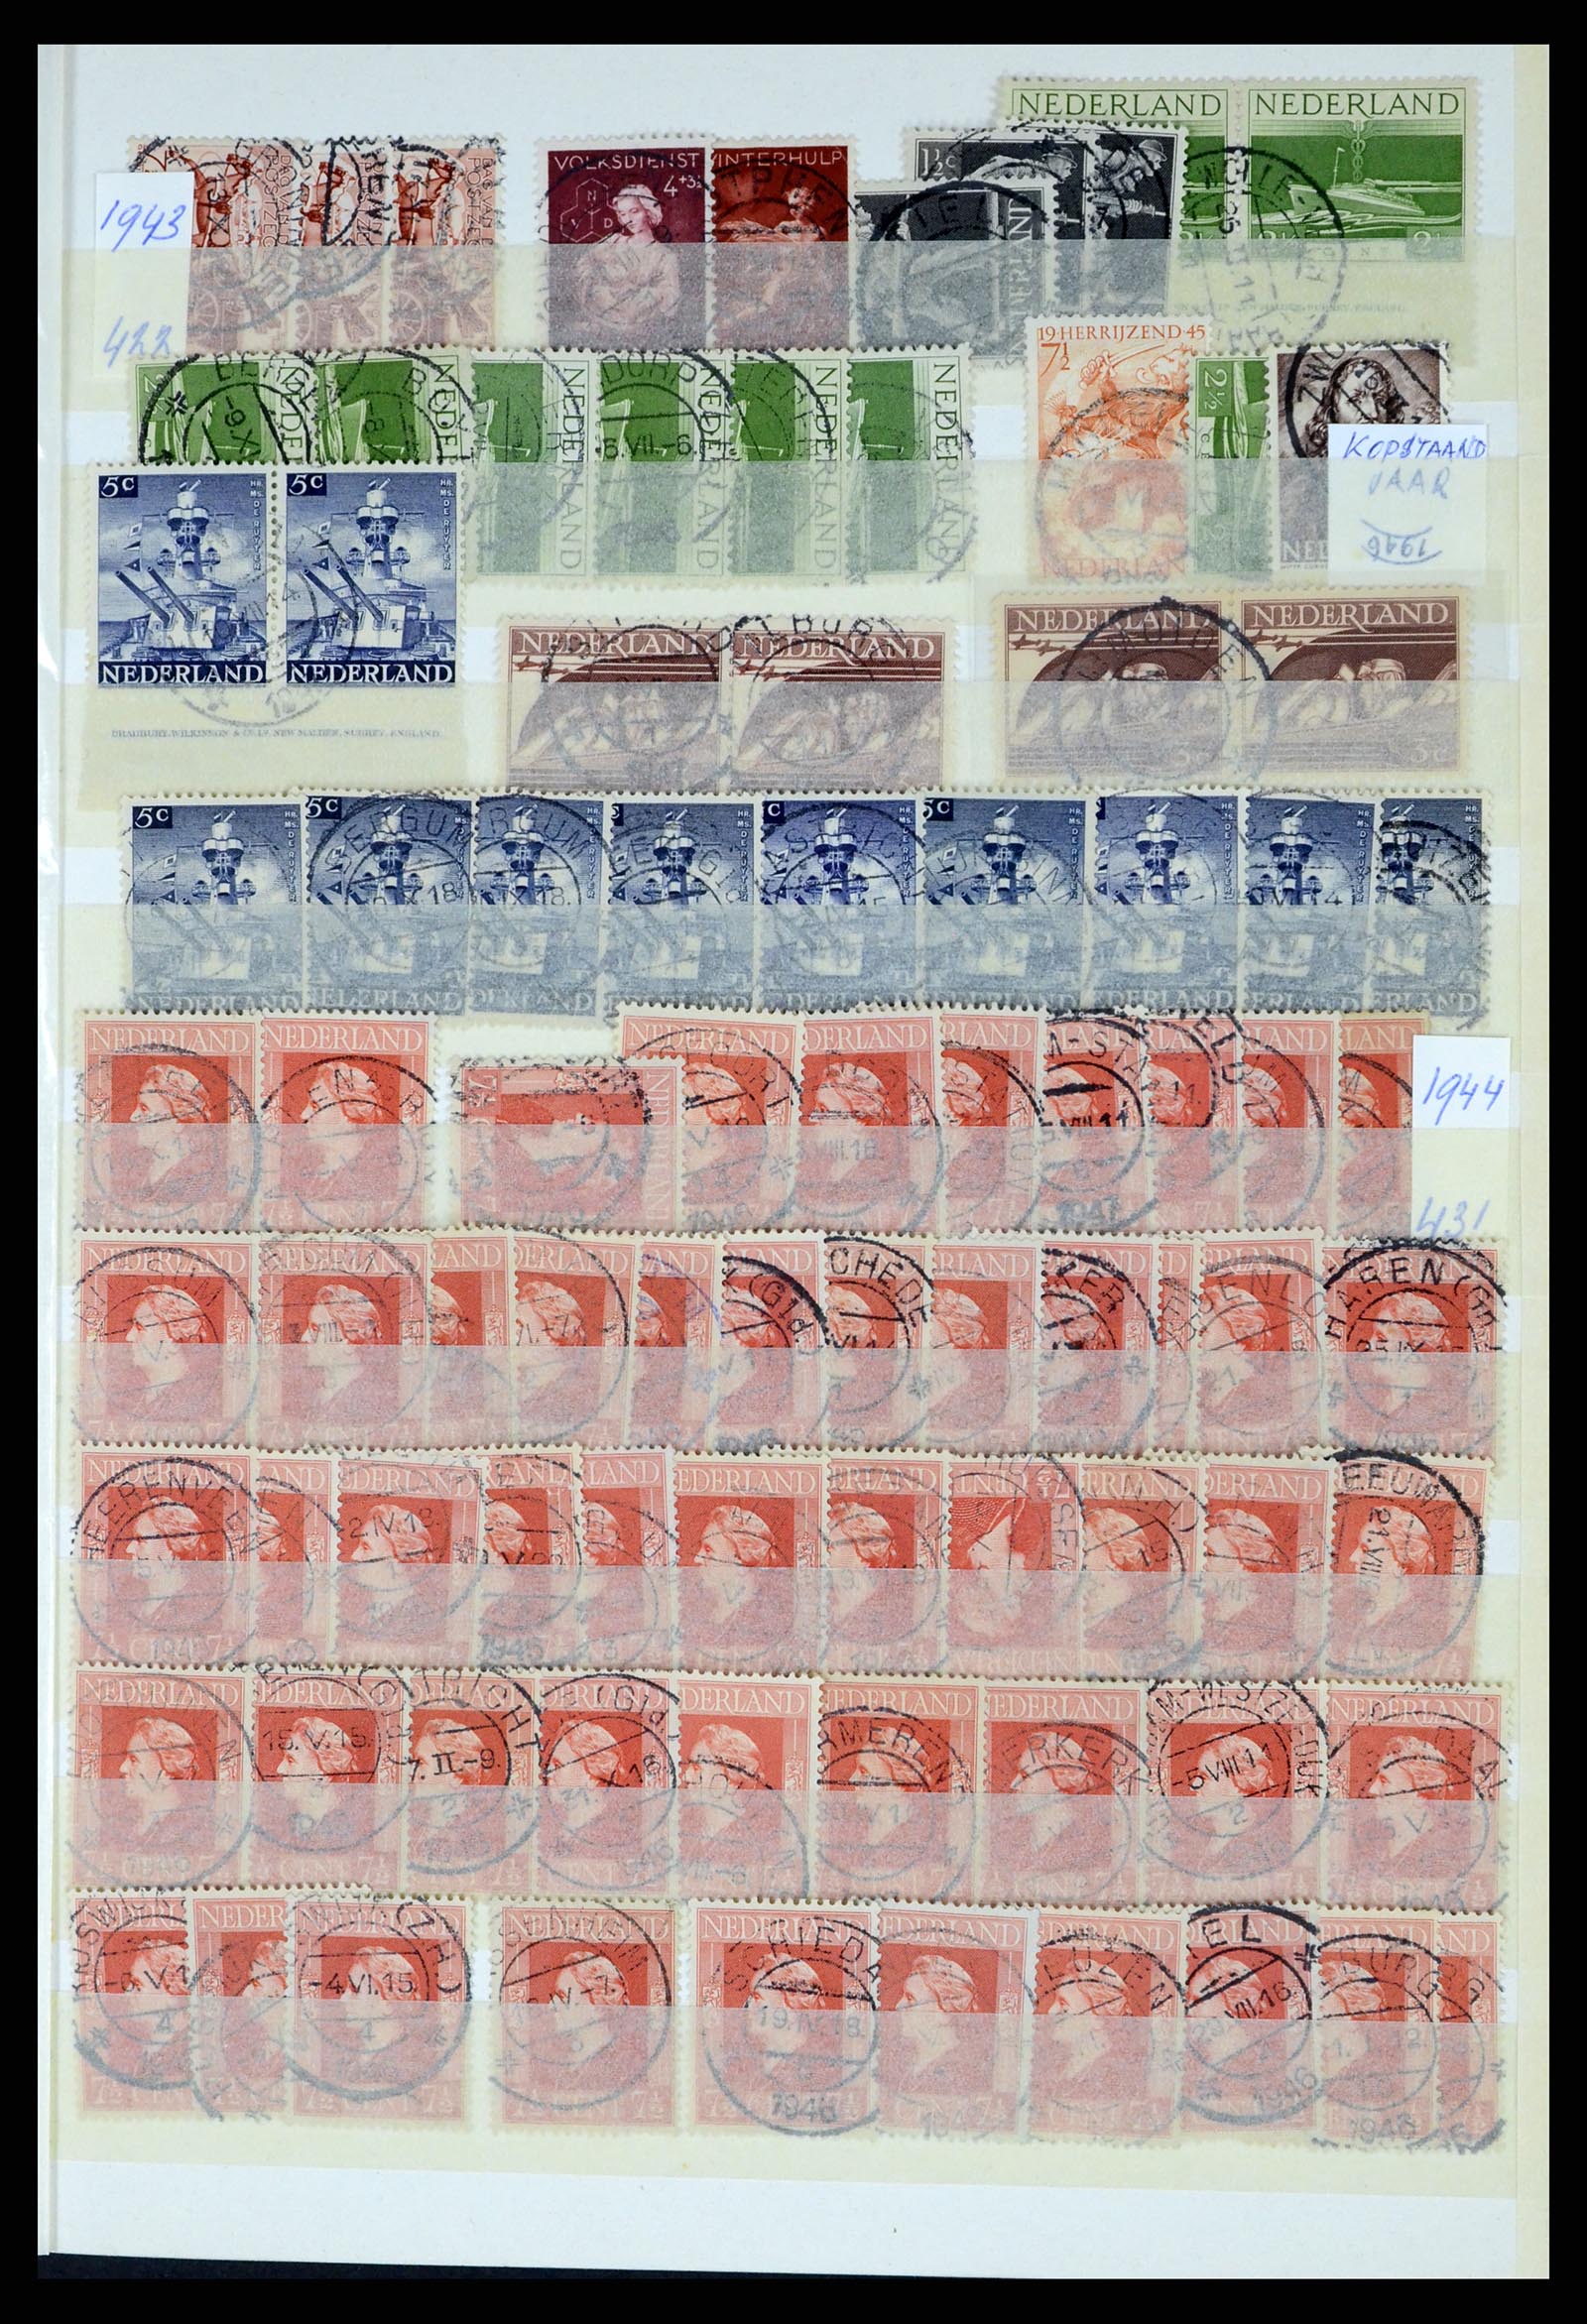 37424 039 - Postzegelverzameling 37424 Nederland kortebalk stempels.